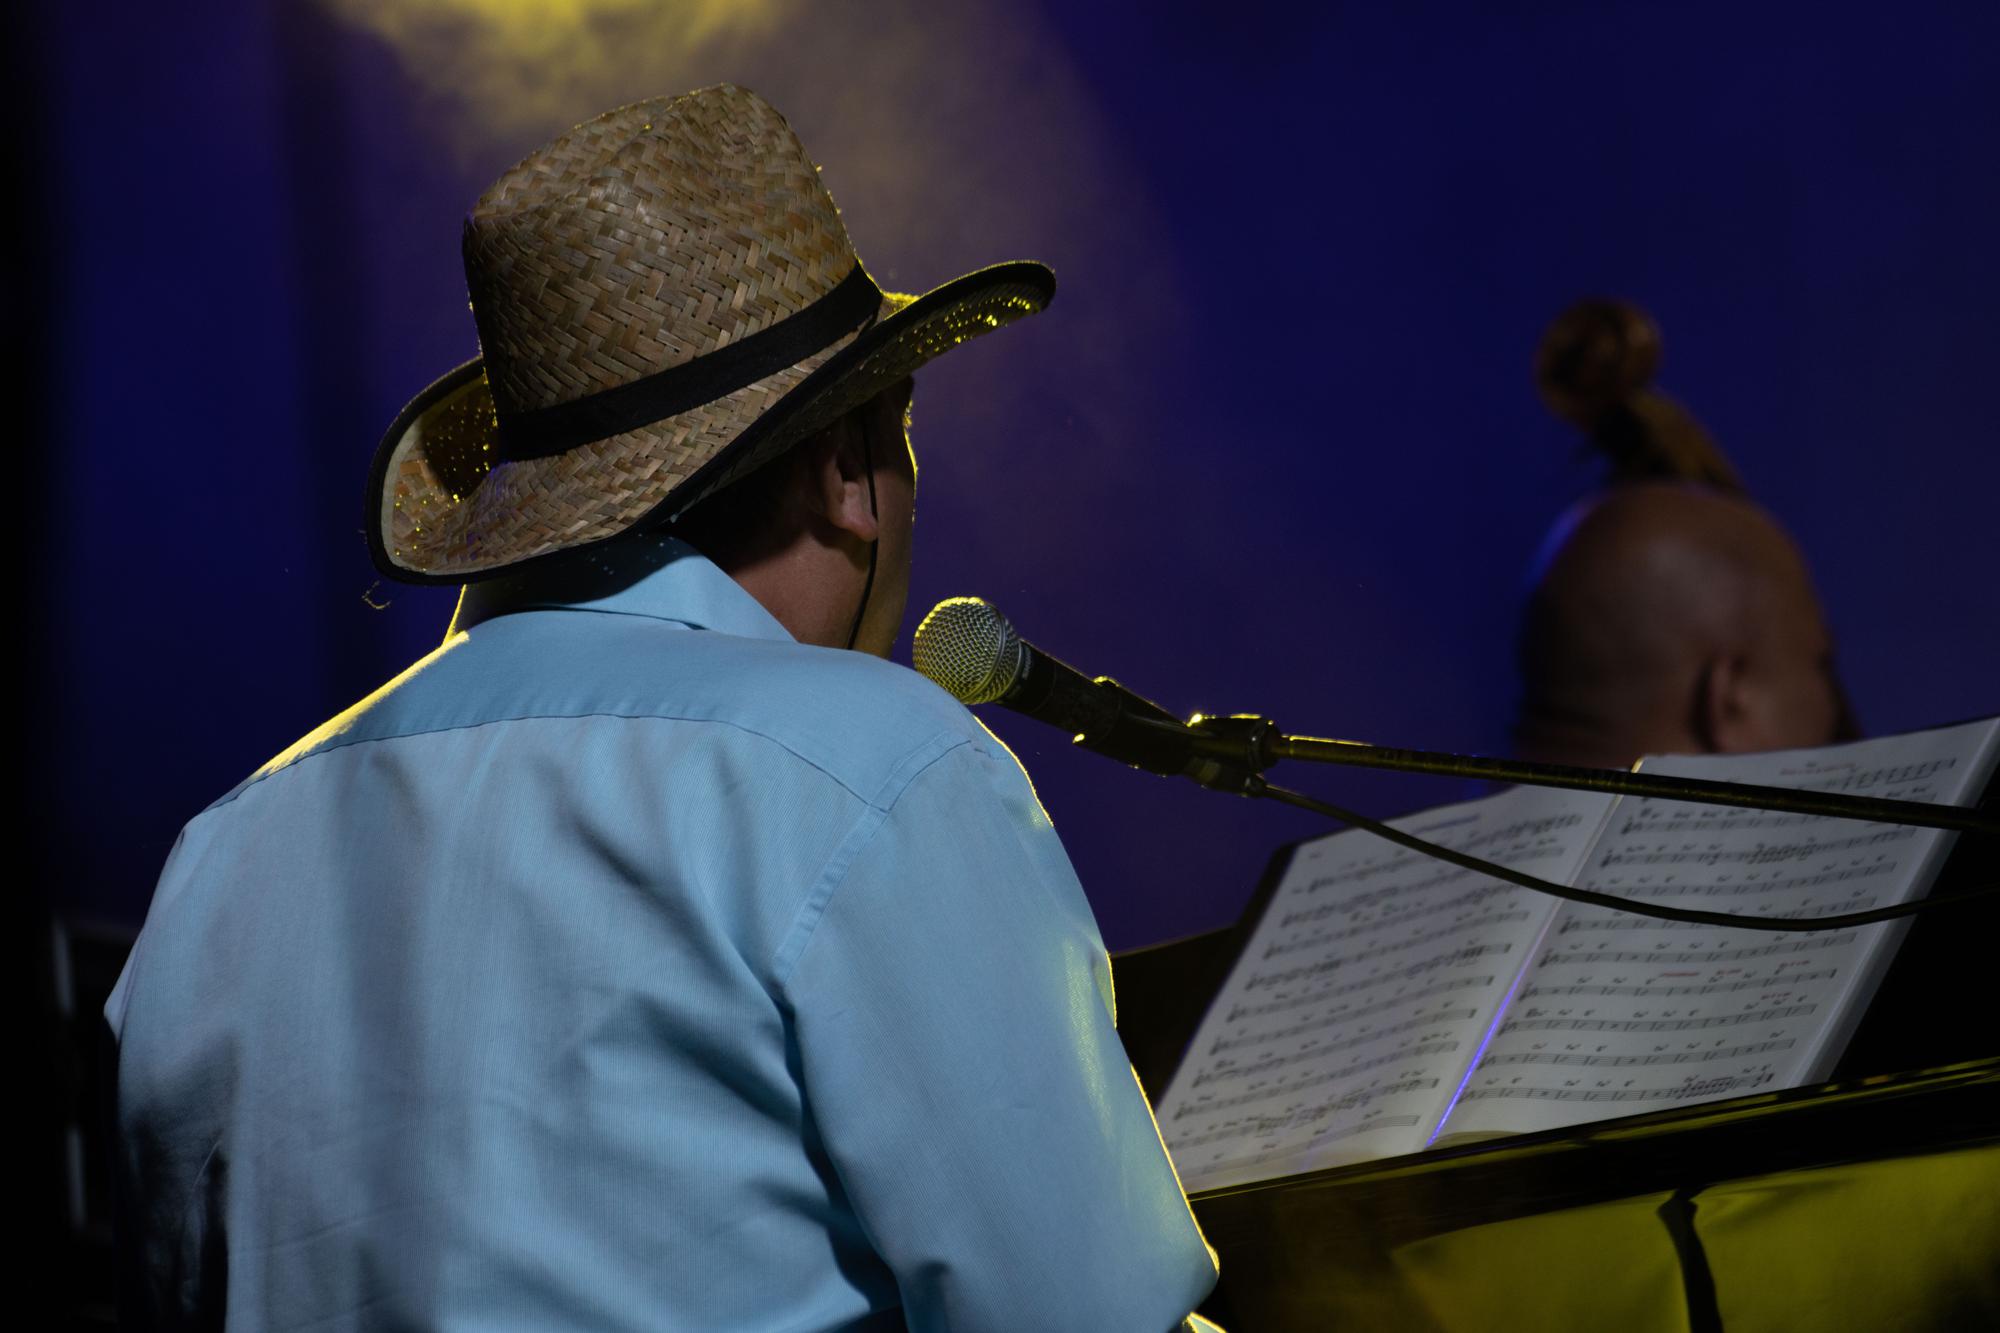 Lucrecia deslumbra en el Festival de Jazz de San Javier